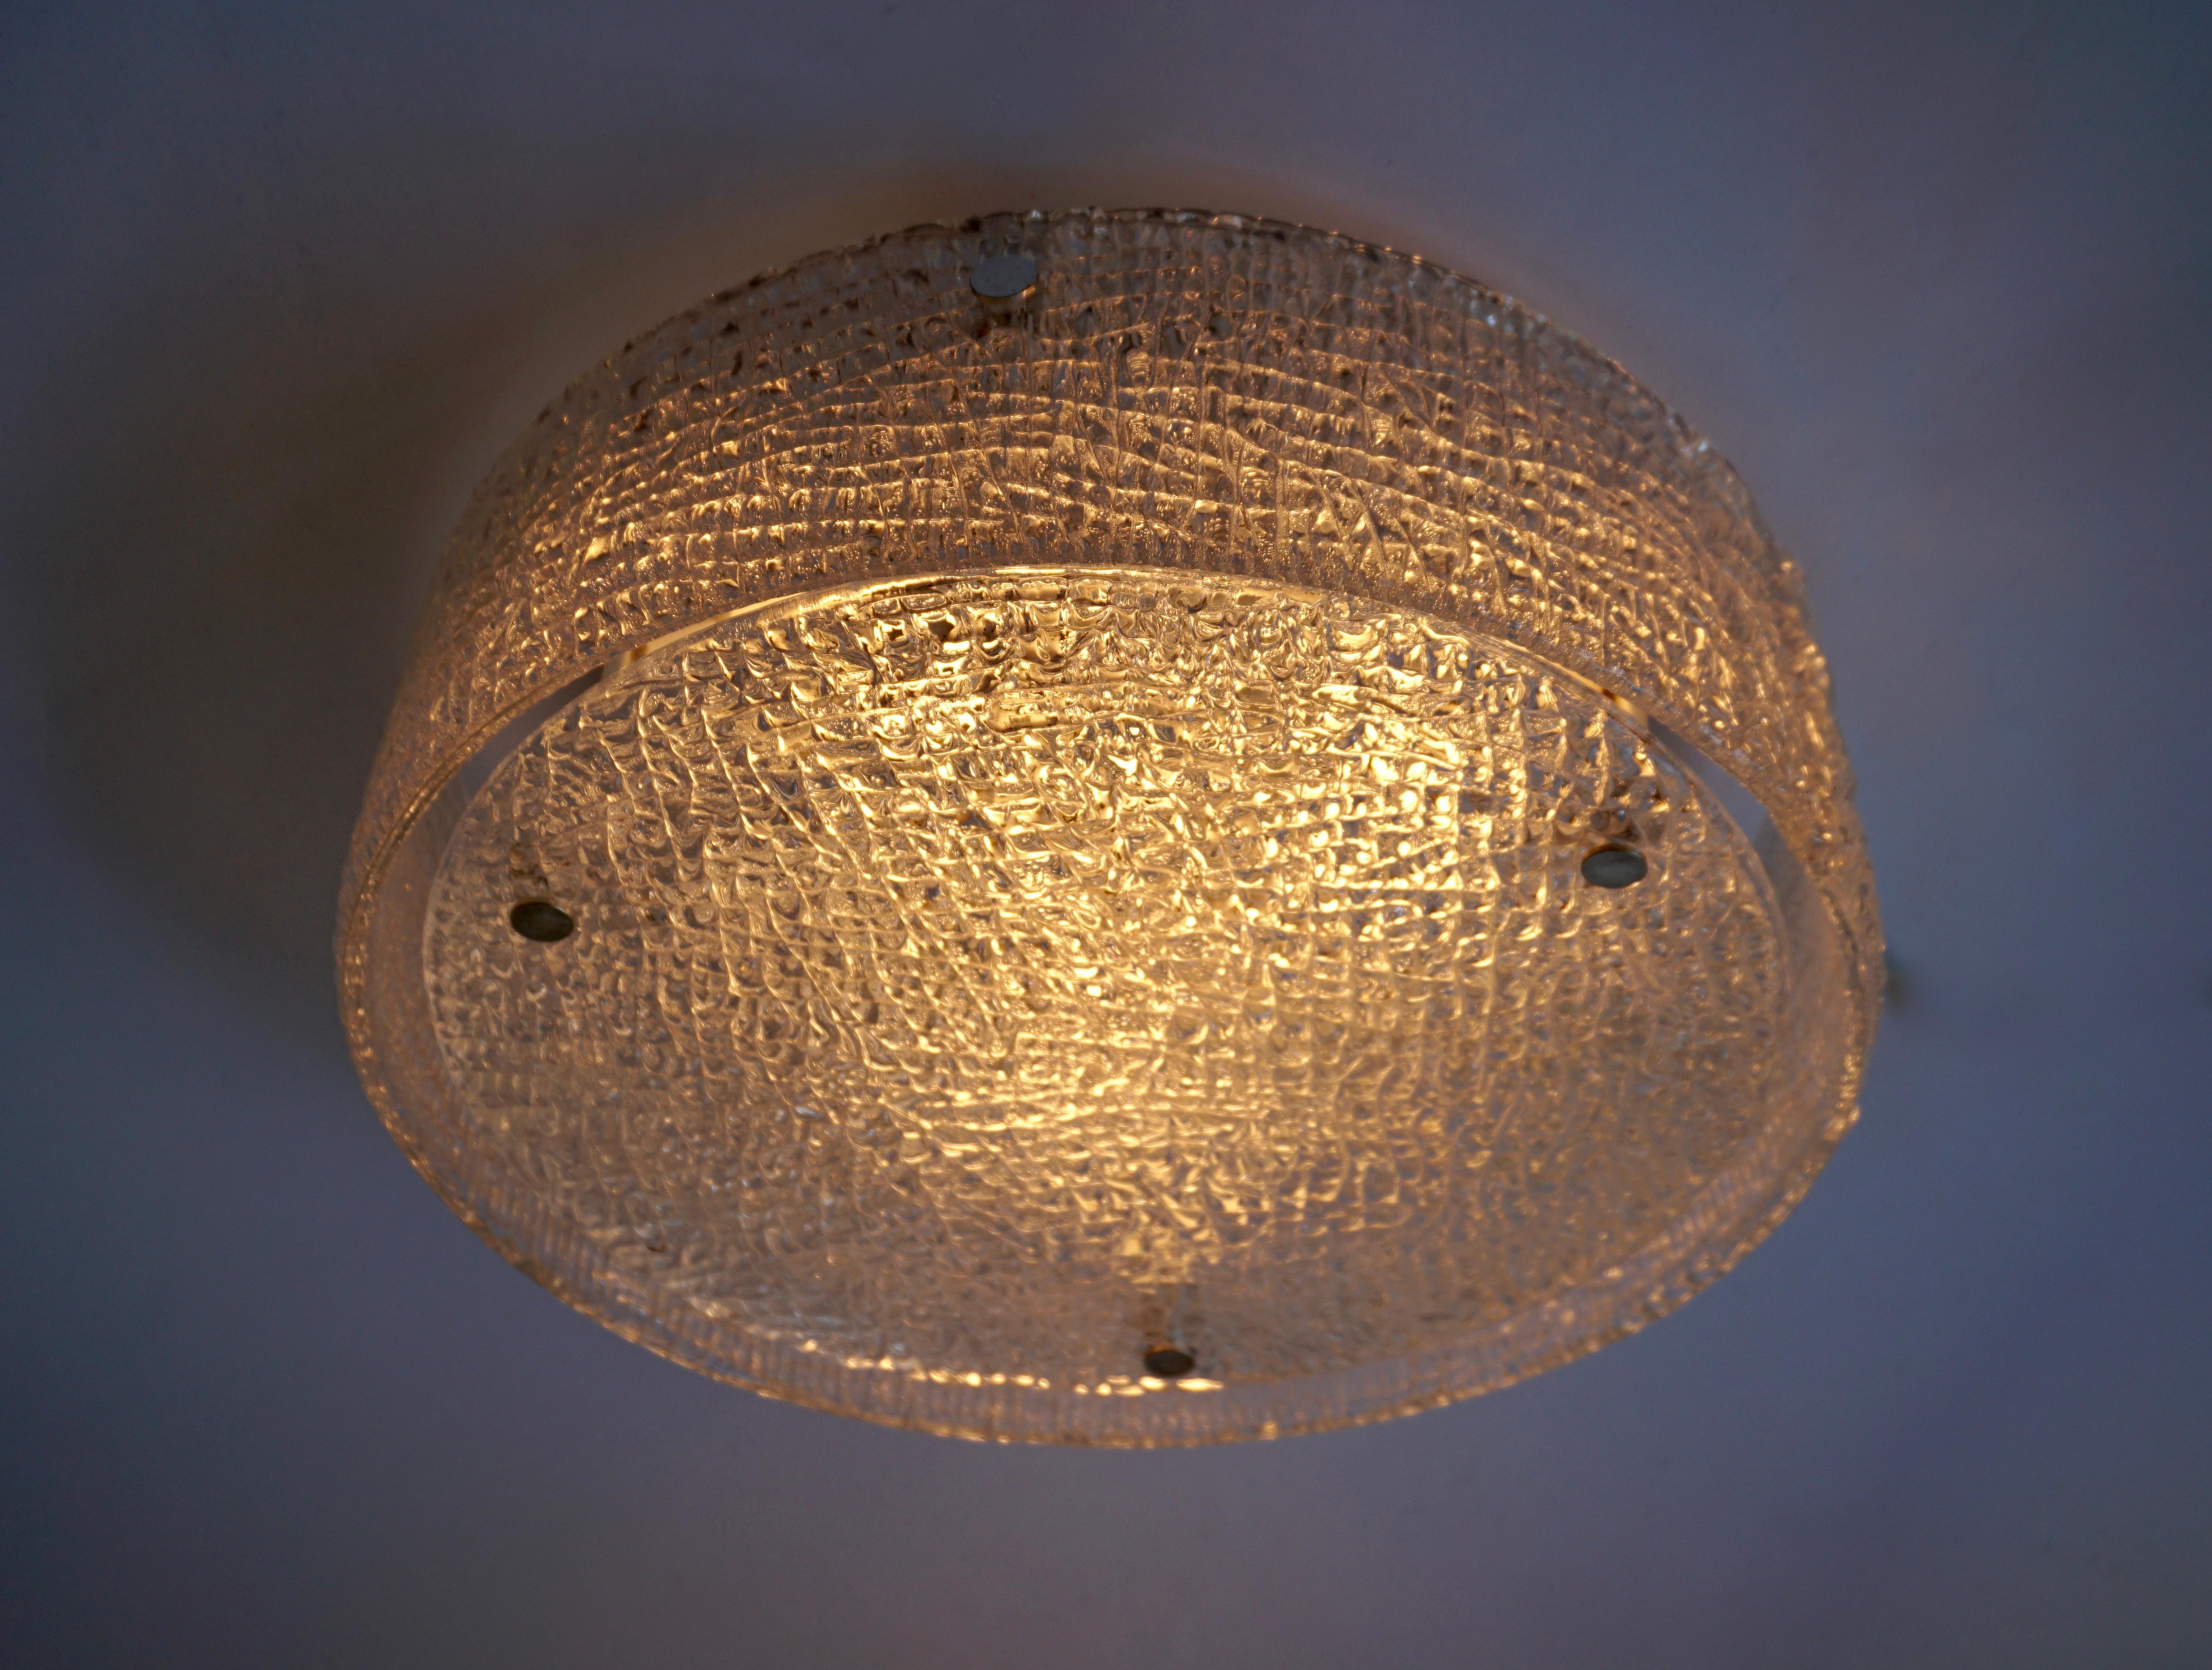 Plafonnier en verre italien de Murano.
Mesures : 
Diamètre 40 cm.
Hauteur 15 cm.
Trois ampoules E27.